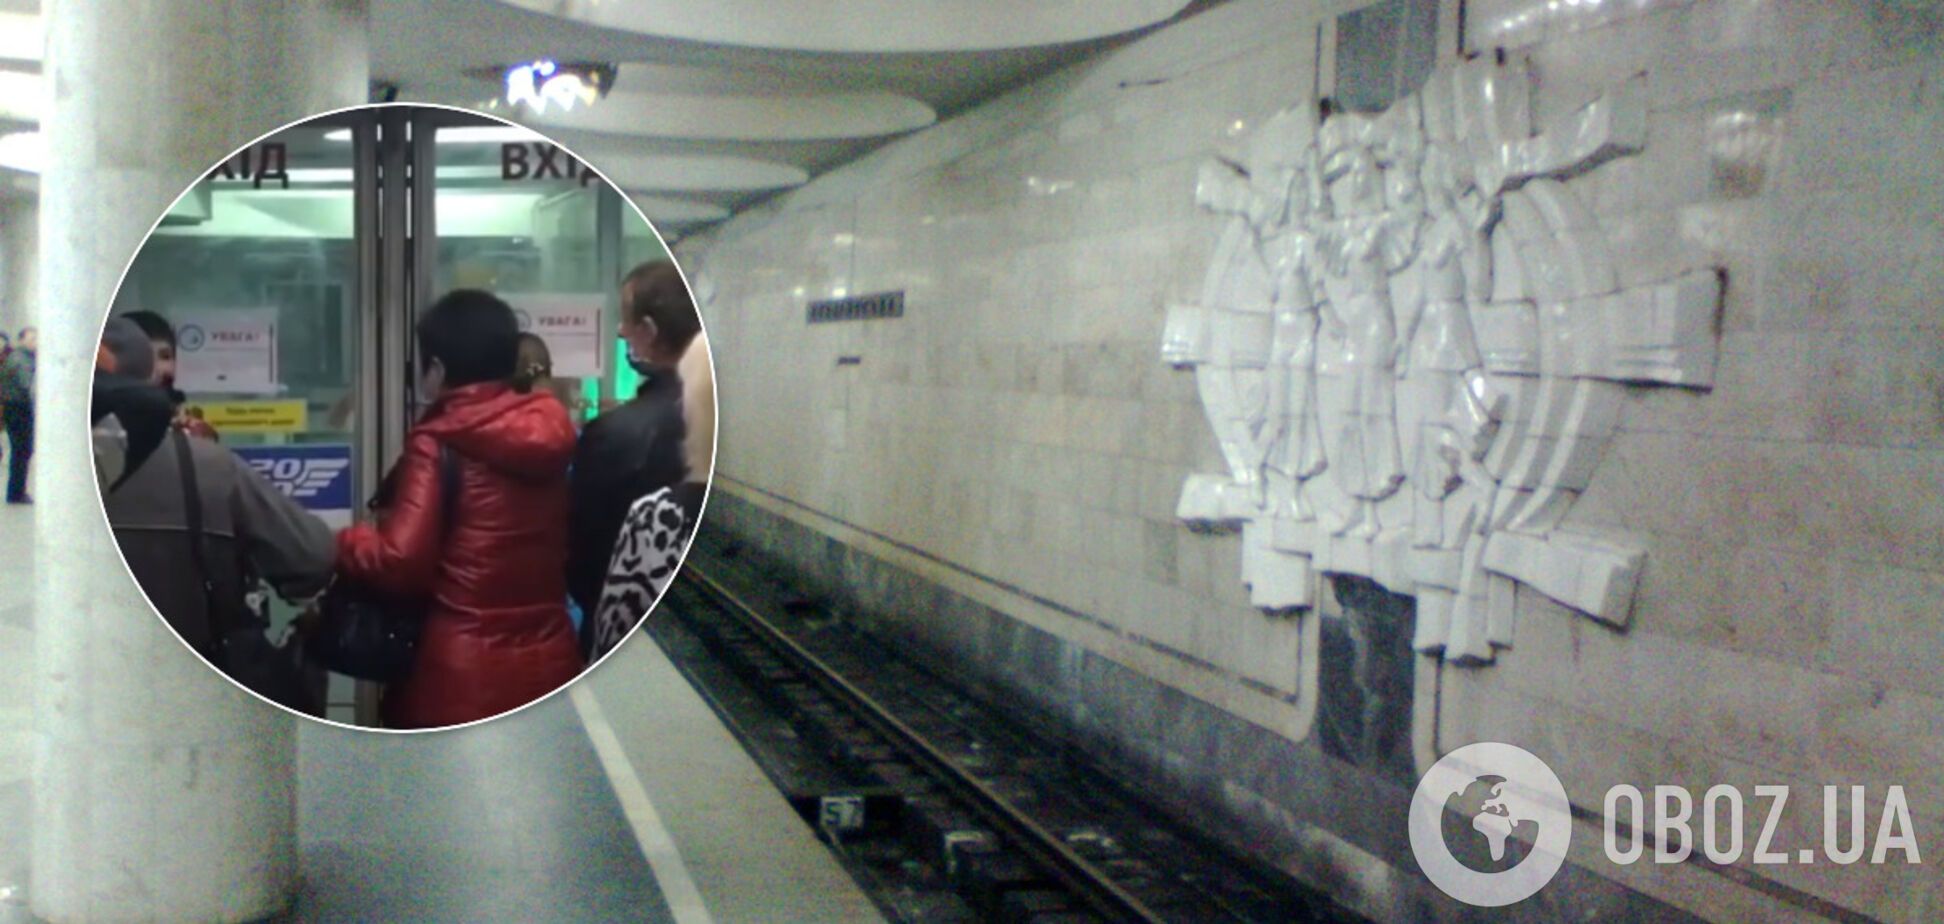 Метро Киева и Харькова возобновило работу: что происходит в подземке. Видео